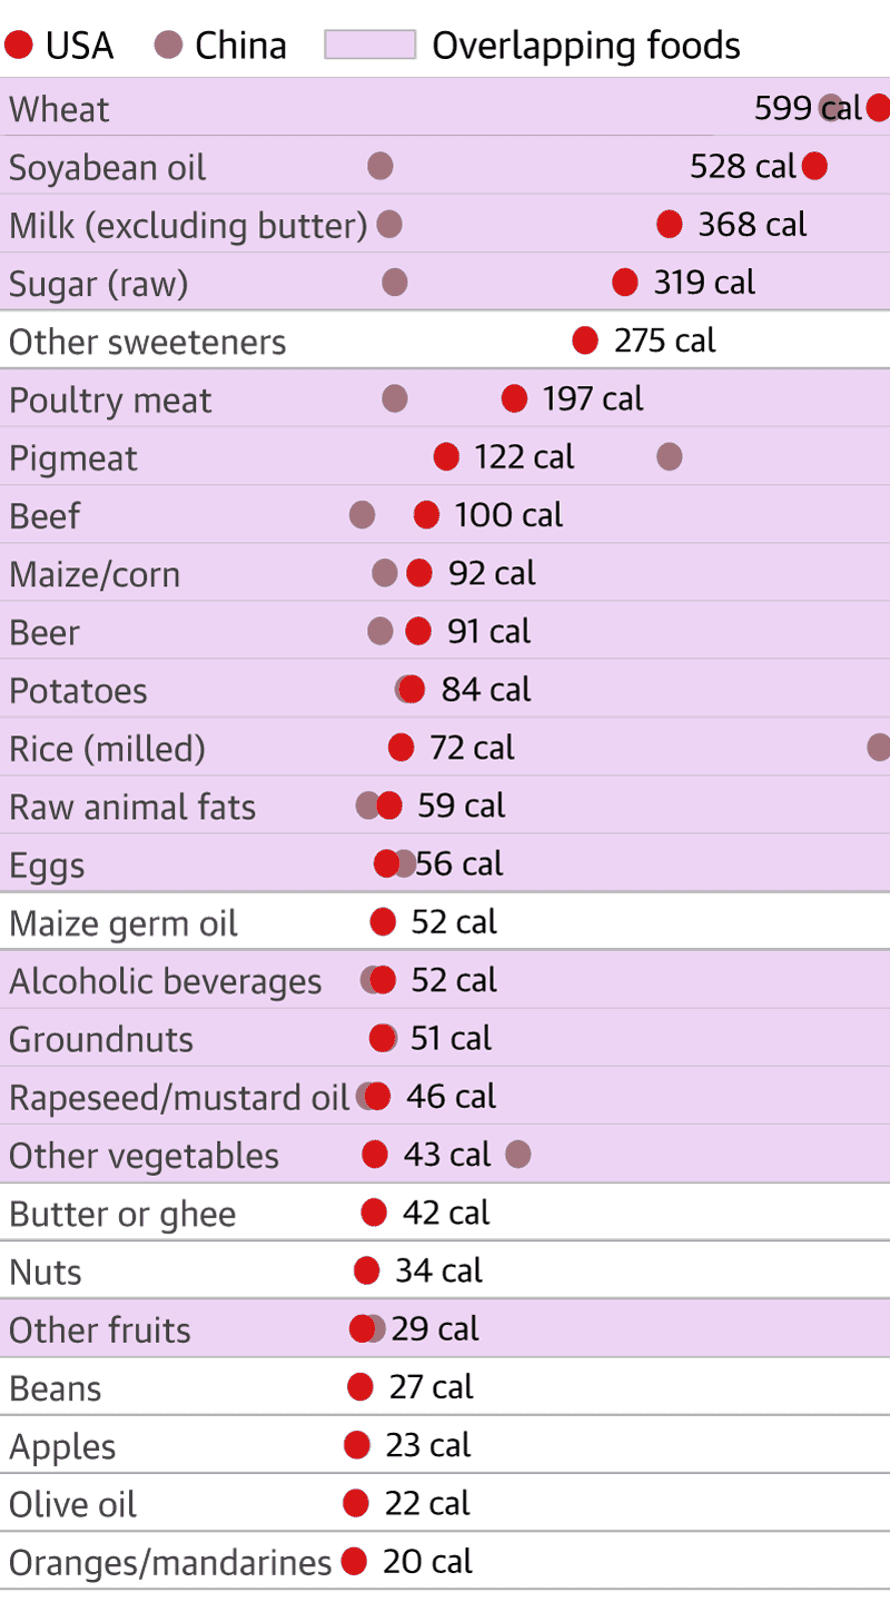 Μια λίστα που δείχνει τρόφιμα το 2013 που αντιστοιχούσαν σε 20 ή περισσότερες θερμίδες την ημέρα στις ΗΠΑ και την Κίνα.  Ο αριθμός των επικαλυπτόμενων τροφίμων με ροζ επισήμανση είναι σημαντικά μεγαλύτερος: σιτάρι, σογιέλαιο, γάλα (εκτός βουτύρου), ζάχαρη (ωμό), κρέας πουλερικών, χοιρινό κρέας, βόειο κρέας, καλαμπόκι/καλαμπόκι, μπύρα, πατάτες, ρύζι (αλεσμένο), ωμό ζωικά λίπη, αυγά, αλκοολούχα ποτά, φιστίκια, κραμβέλαιο/σινάπι, άλλα λαχανικά, άλλα φρούτα